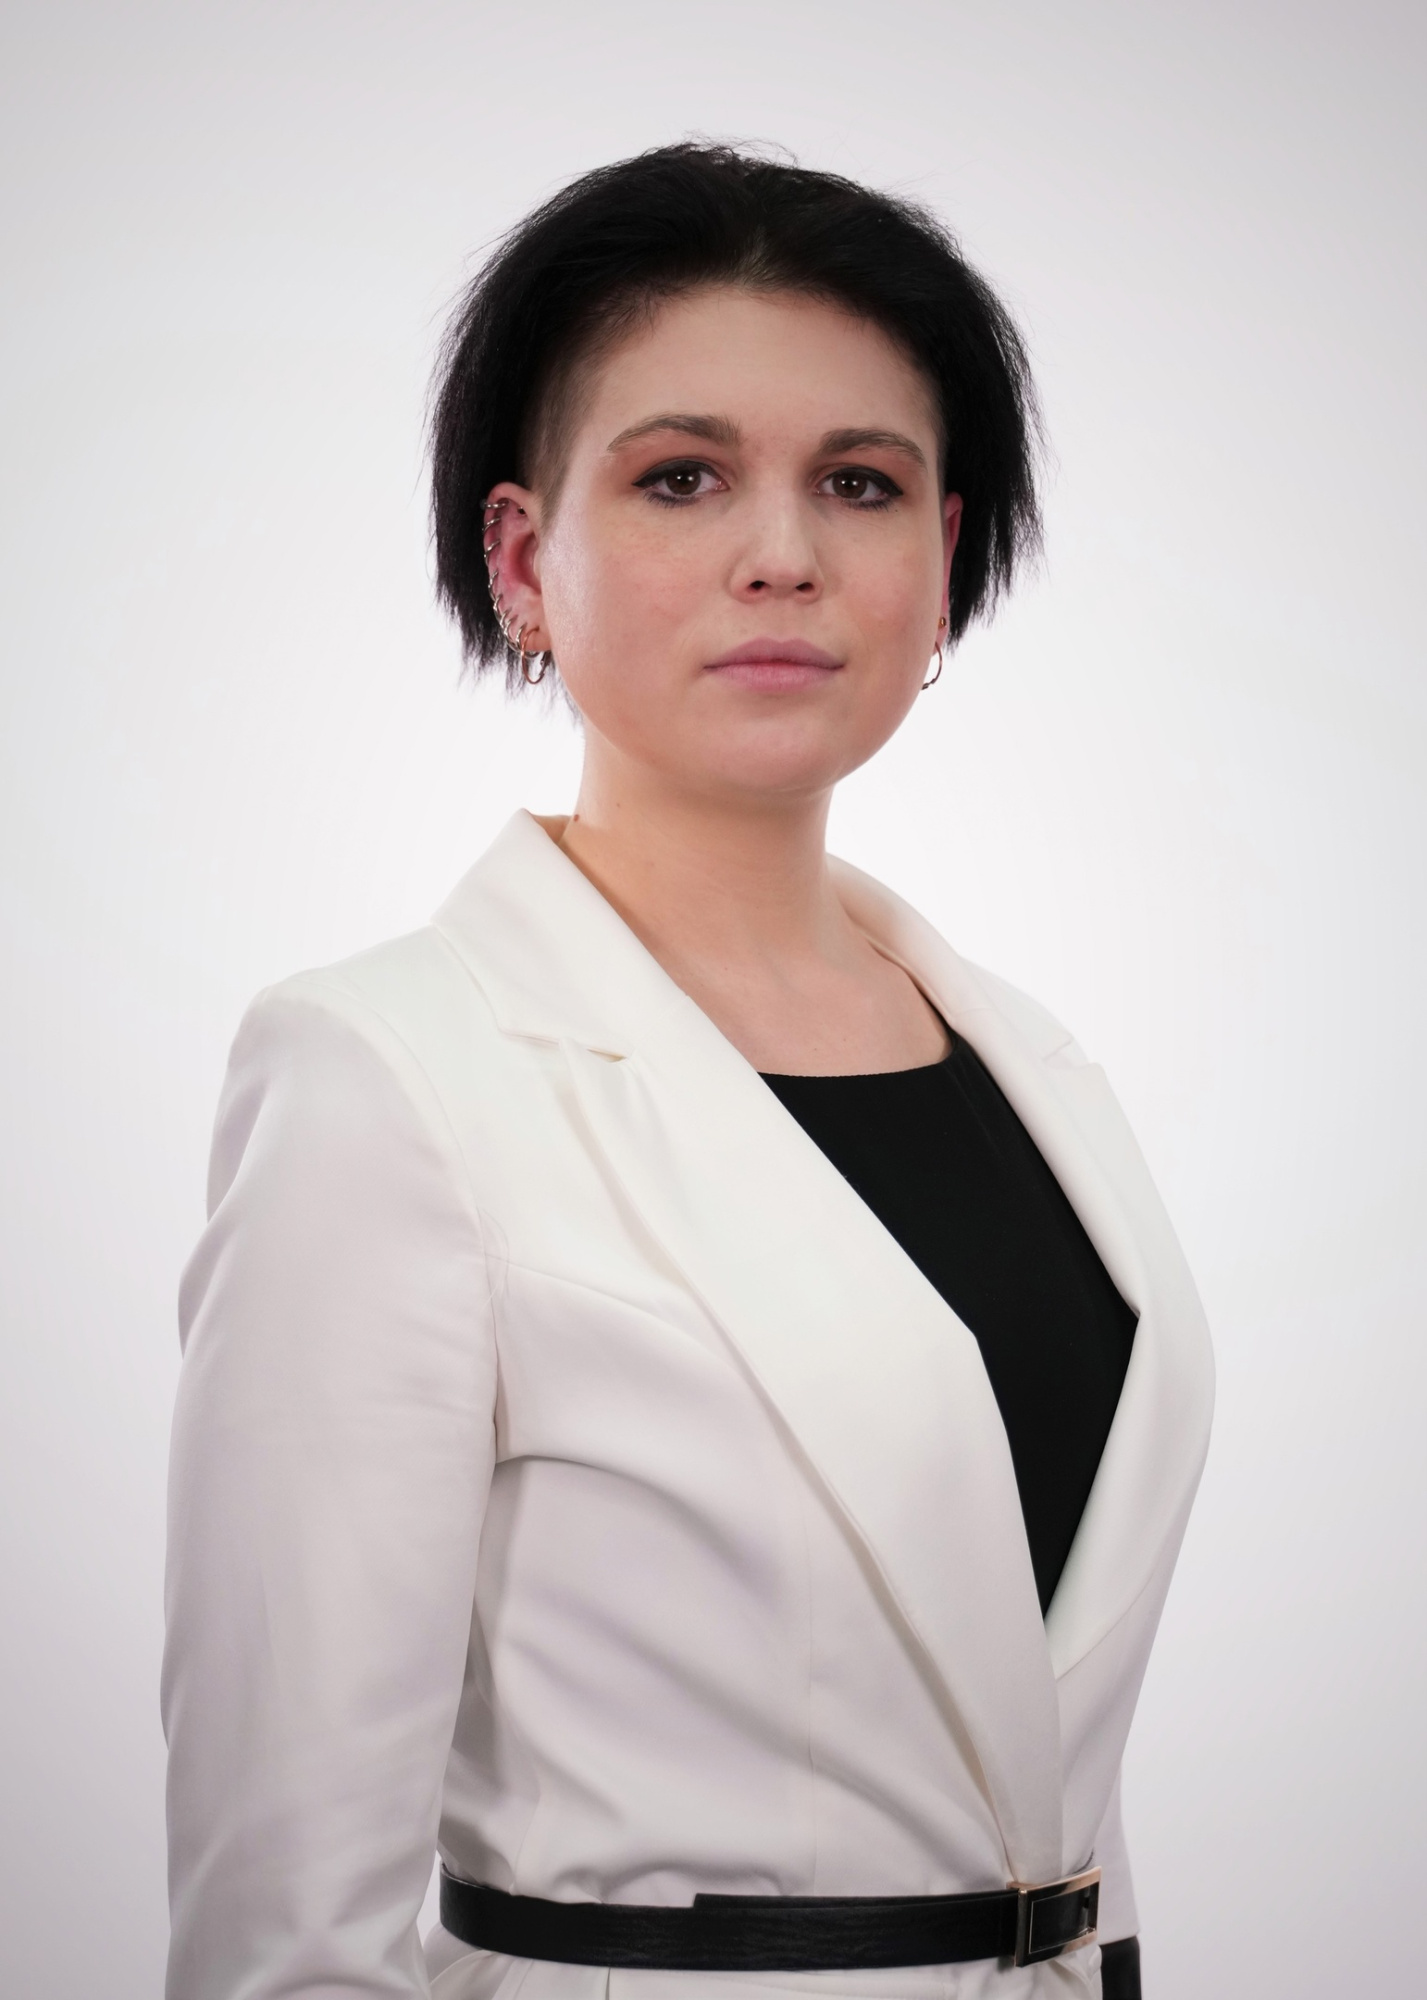 Ильинская Анастасия Олеговна